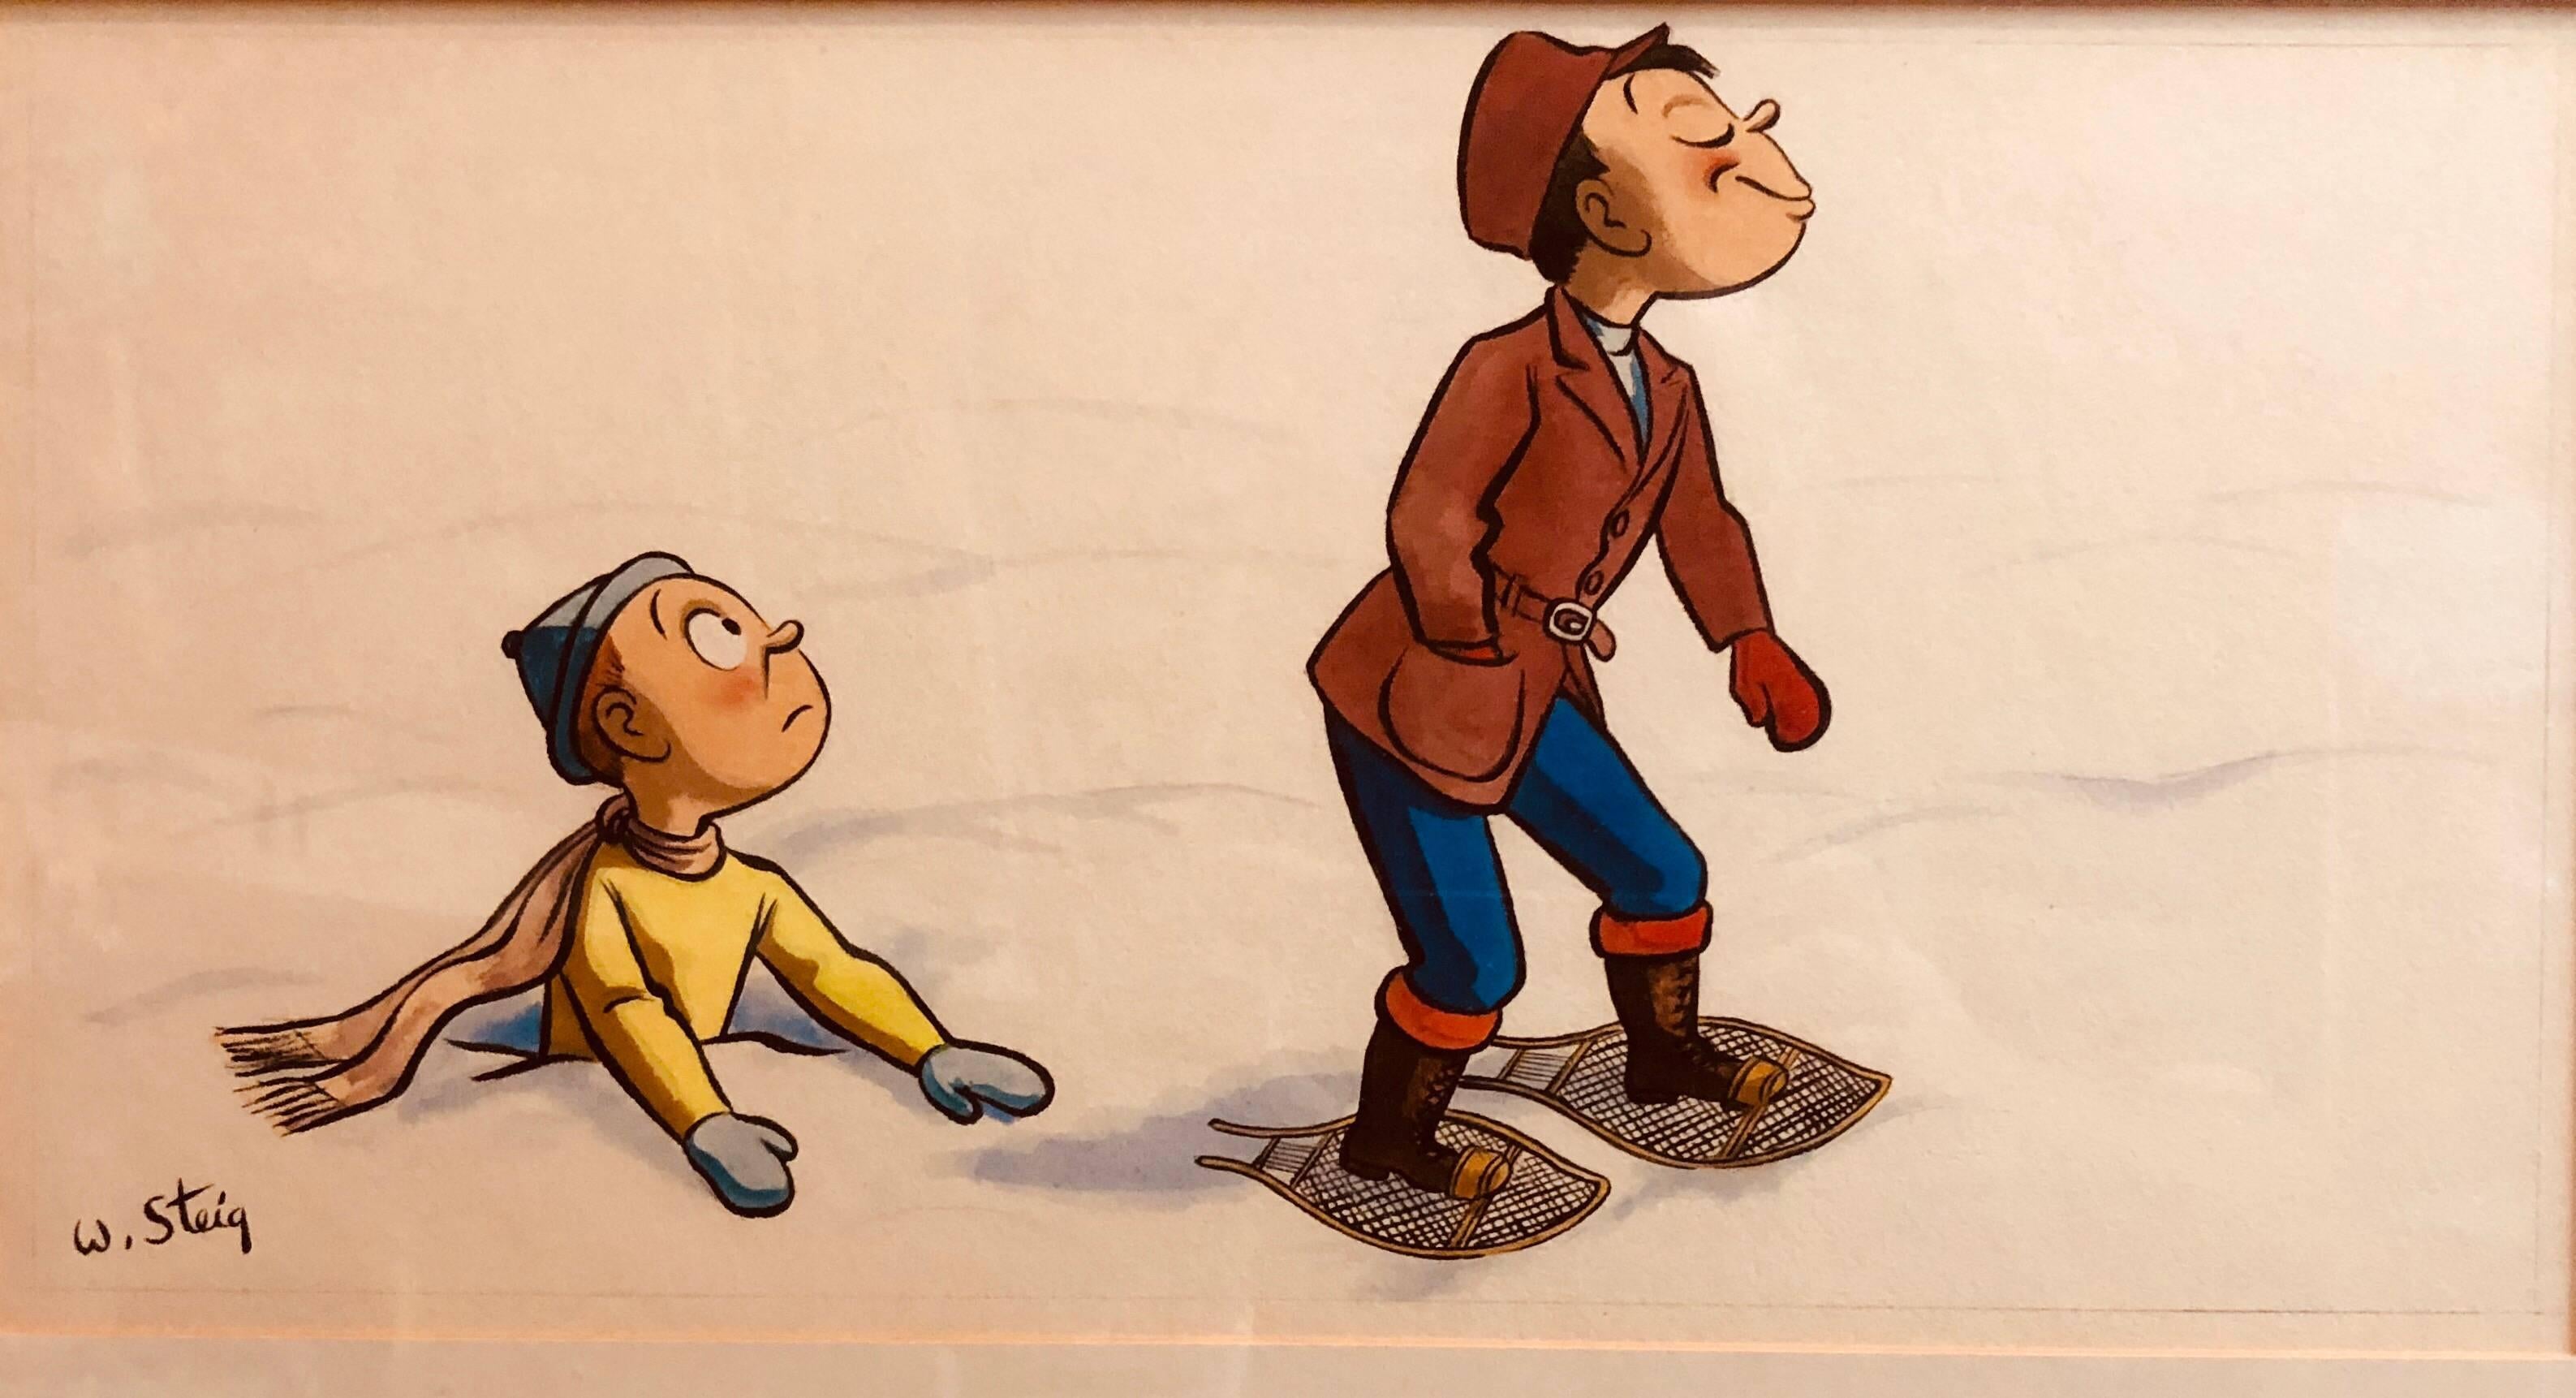 Whimsical Illustration "Snow" Cartoon, 1938 Mt Tremblant Ski Lodge William Steig